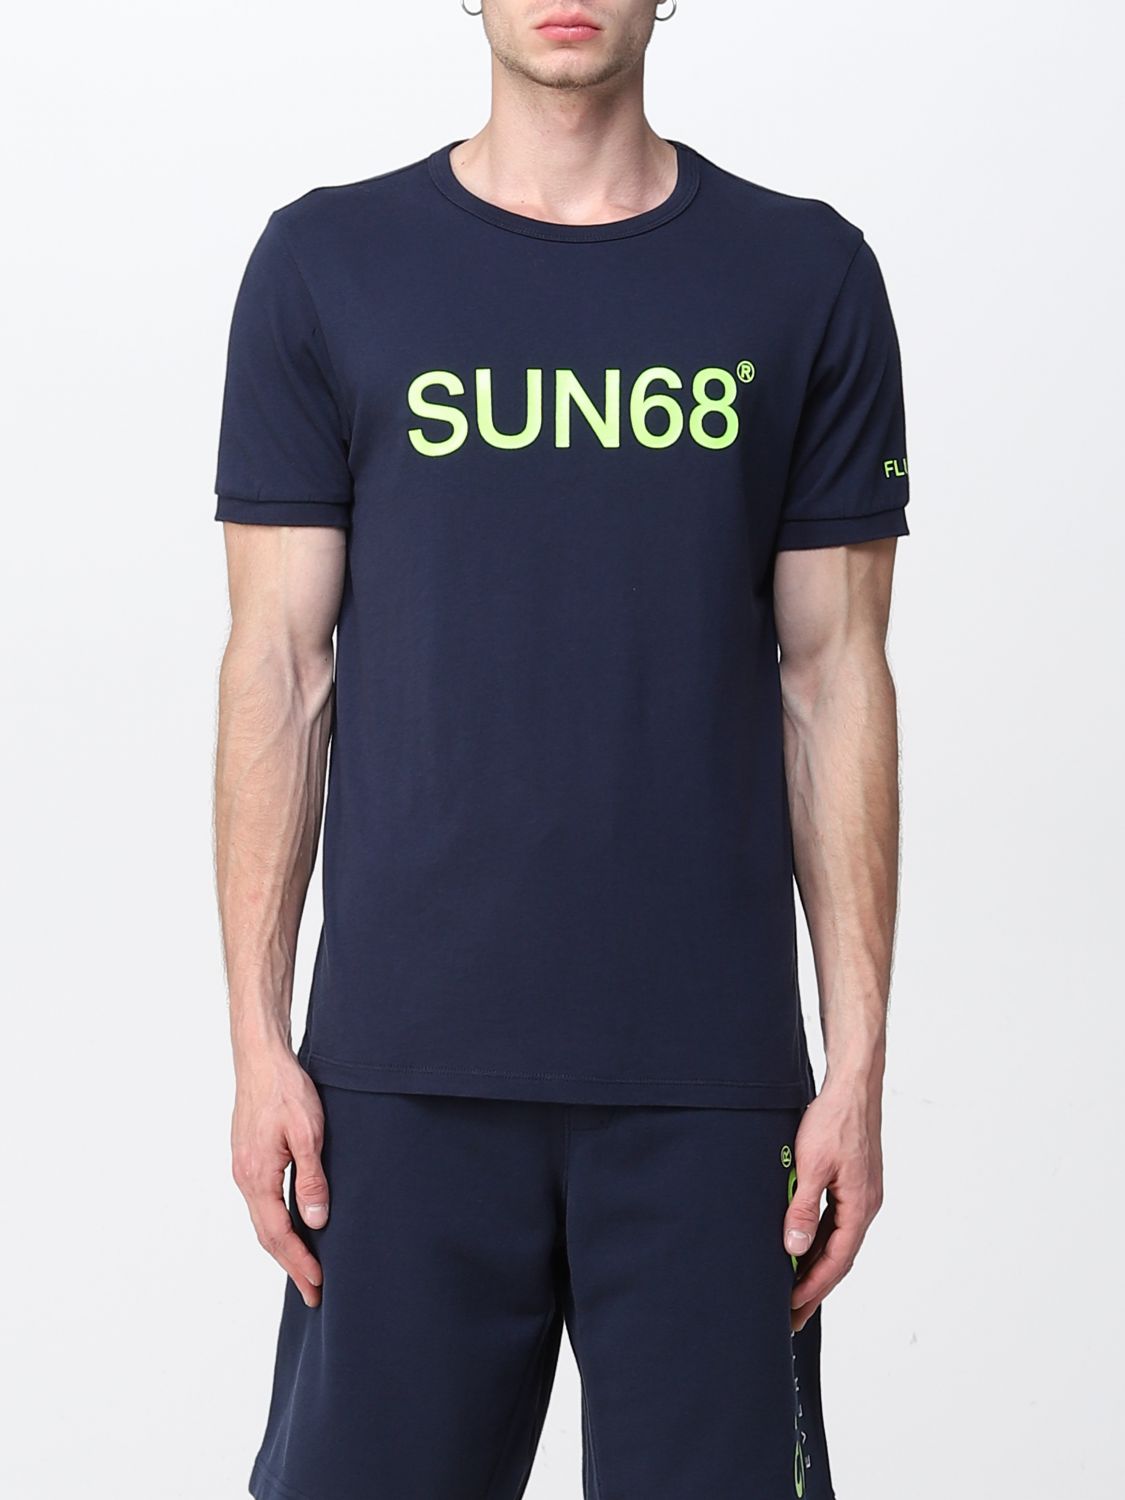 T-Shirt Sun 68: Sun 68 Herren T-Shirt blau 1